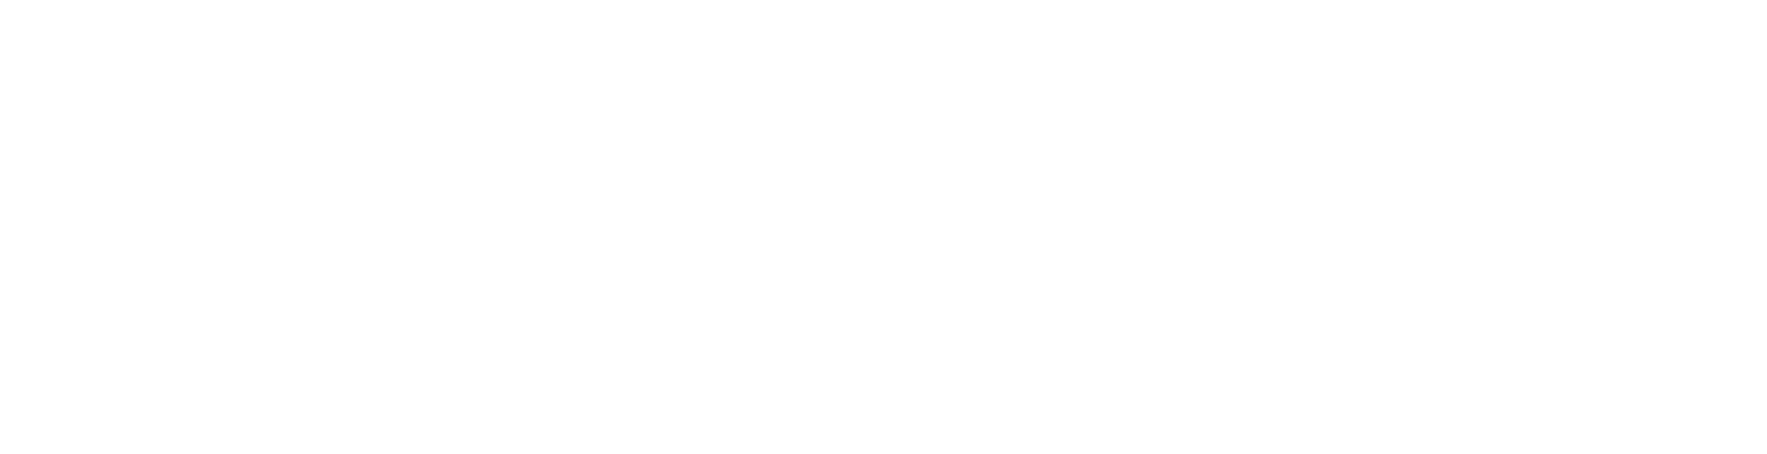 Vide1 logo